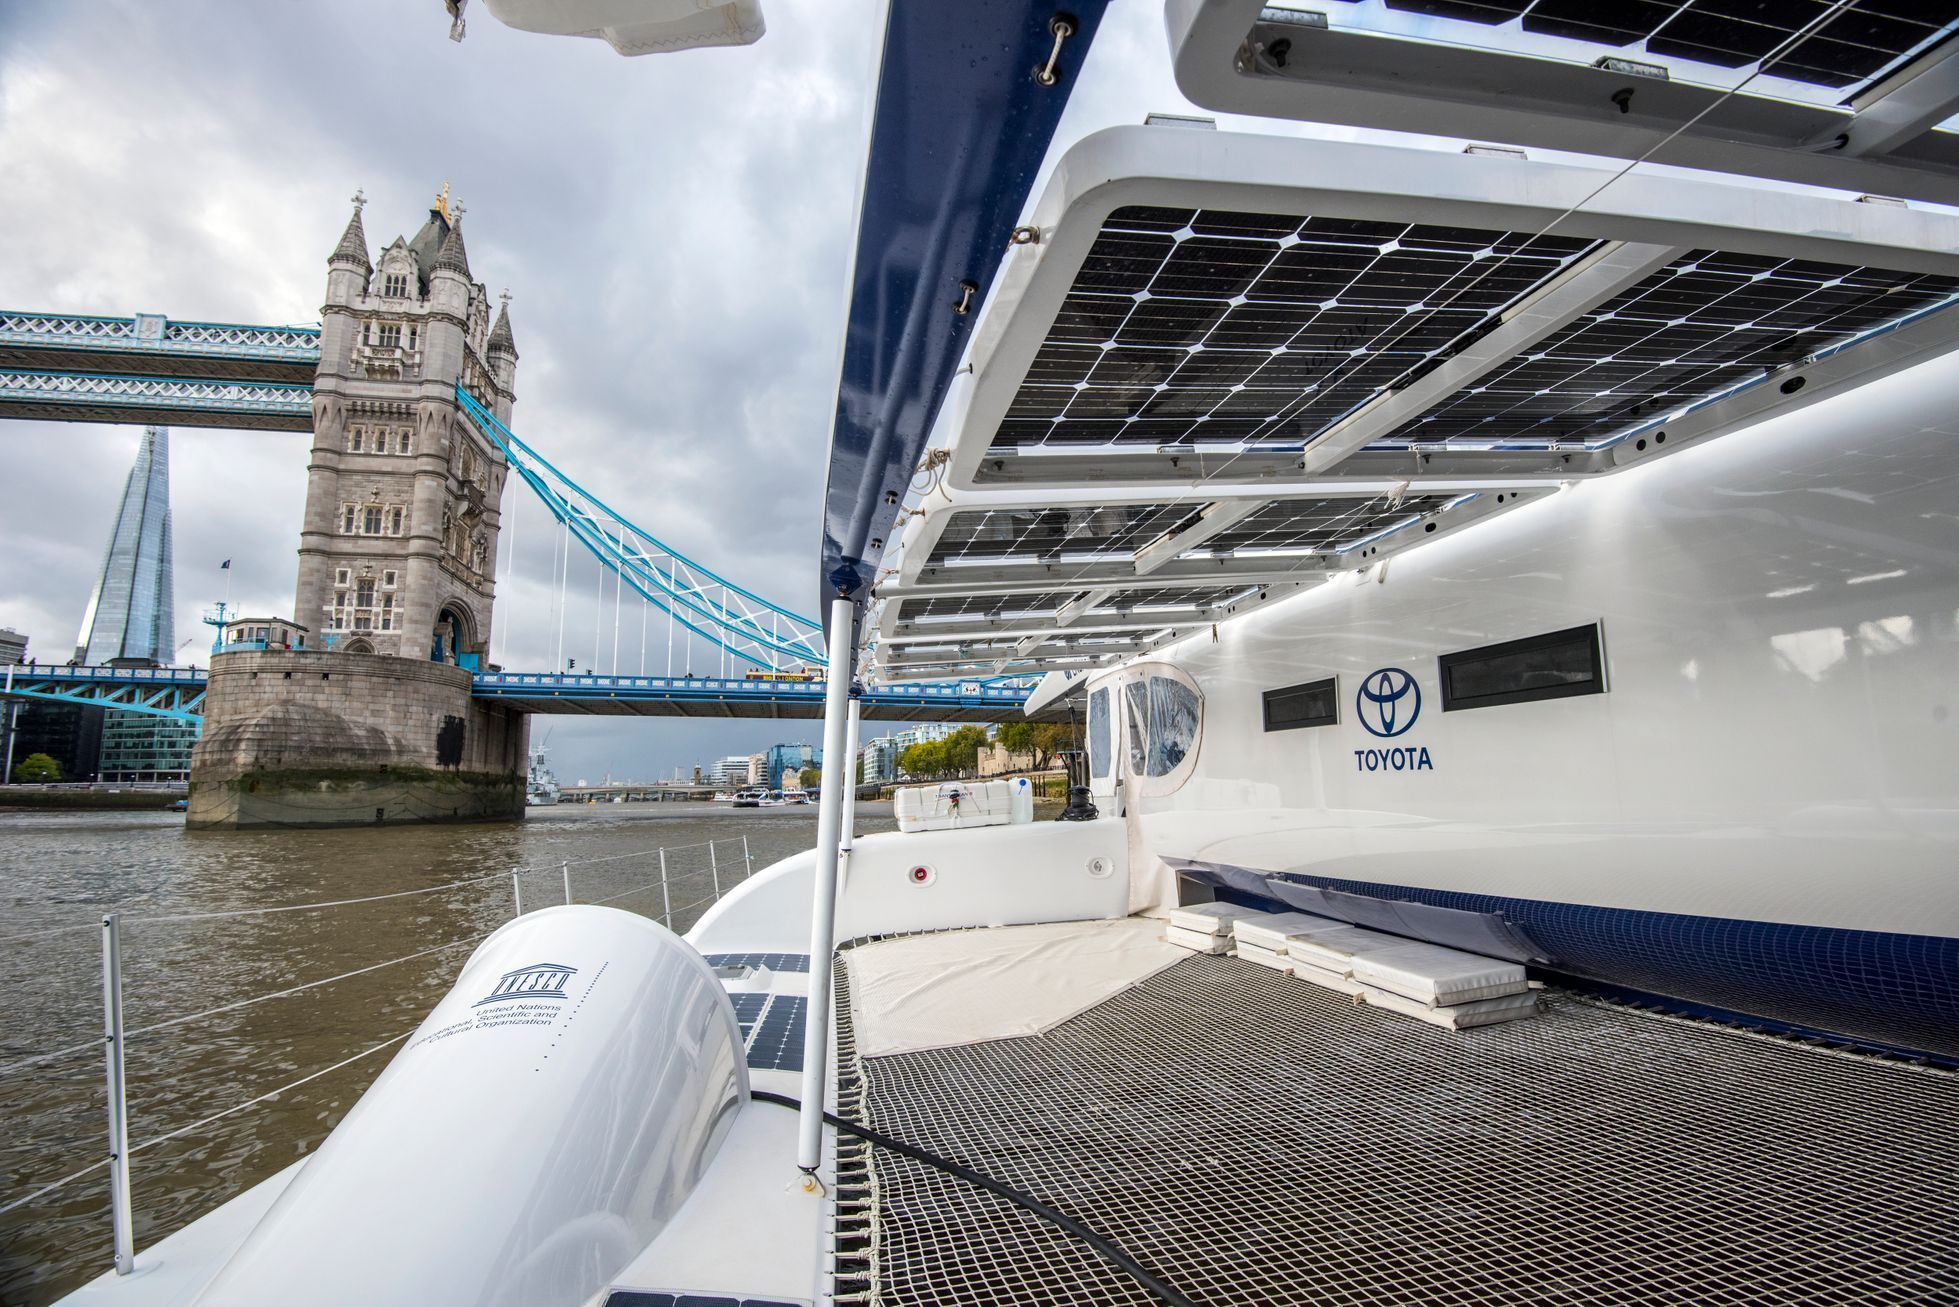 Vodíková loď Energy Observer v Londýně 2019